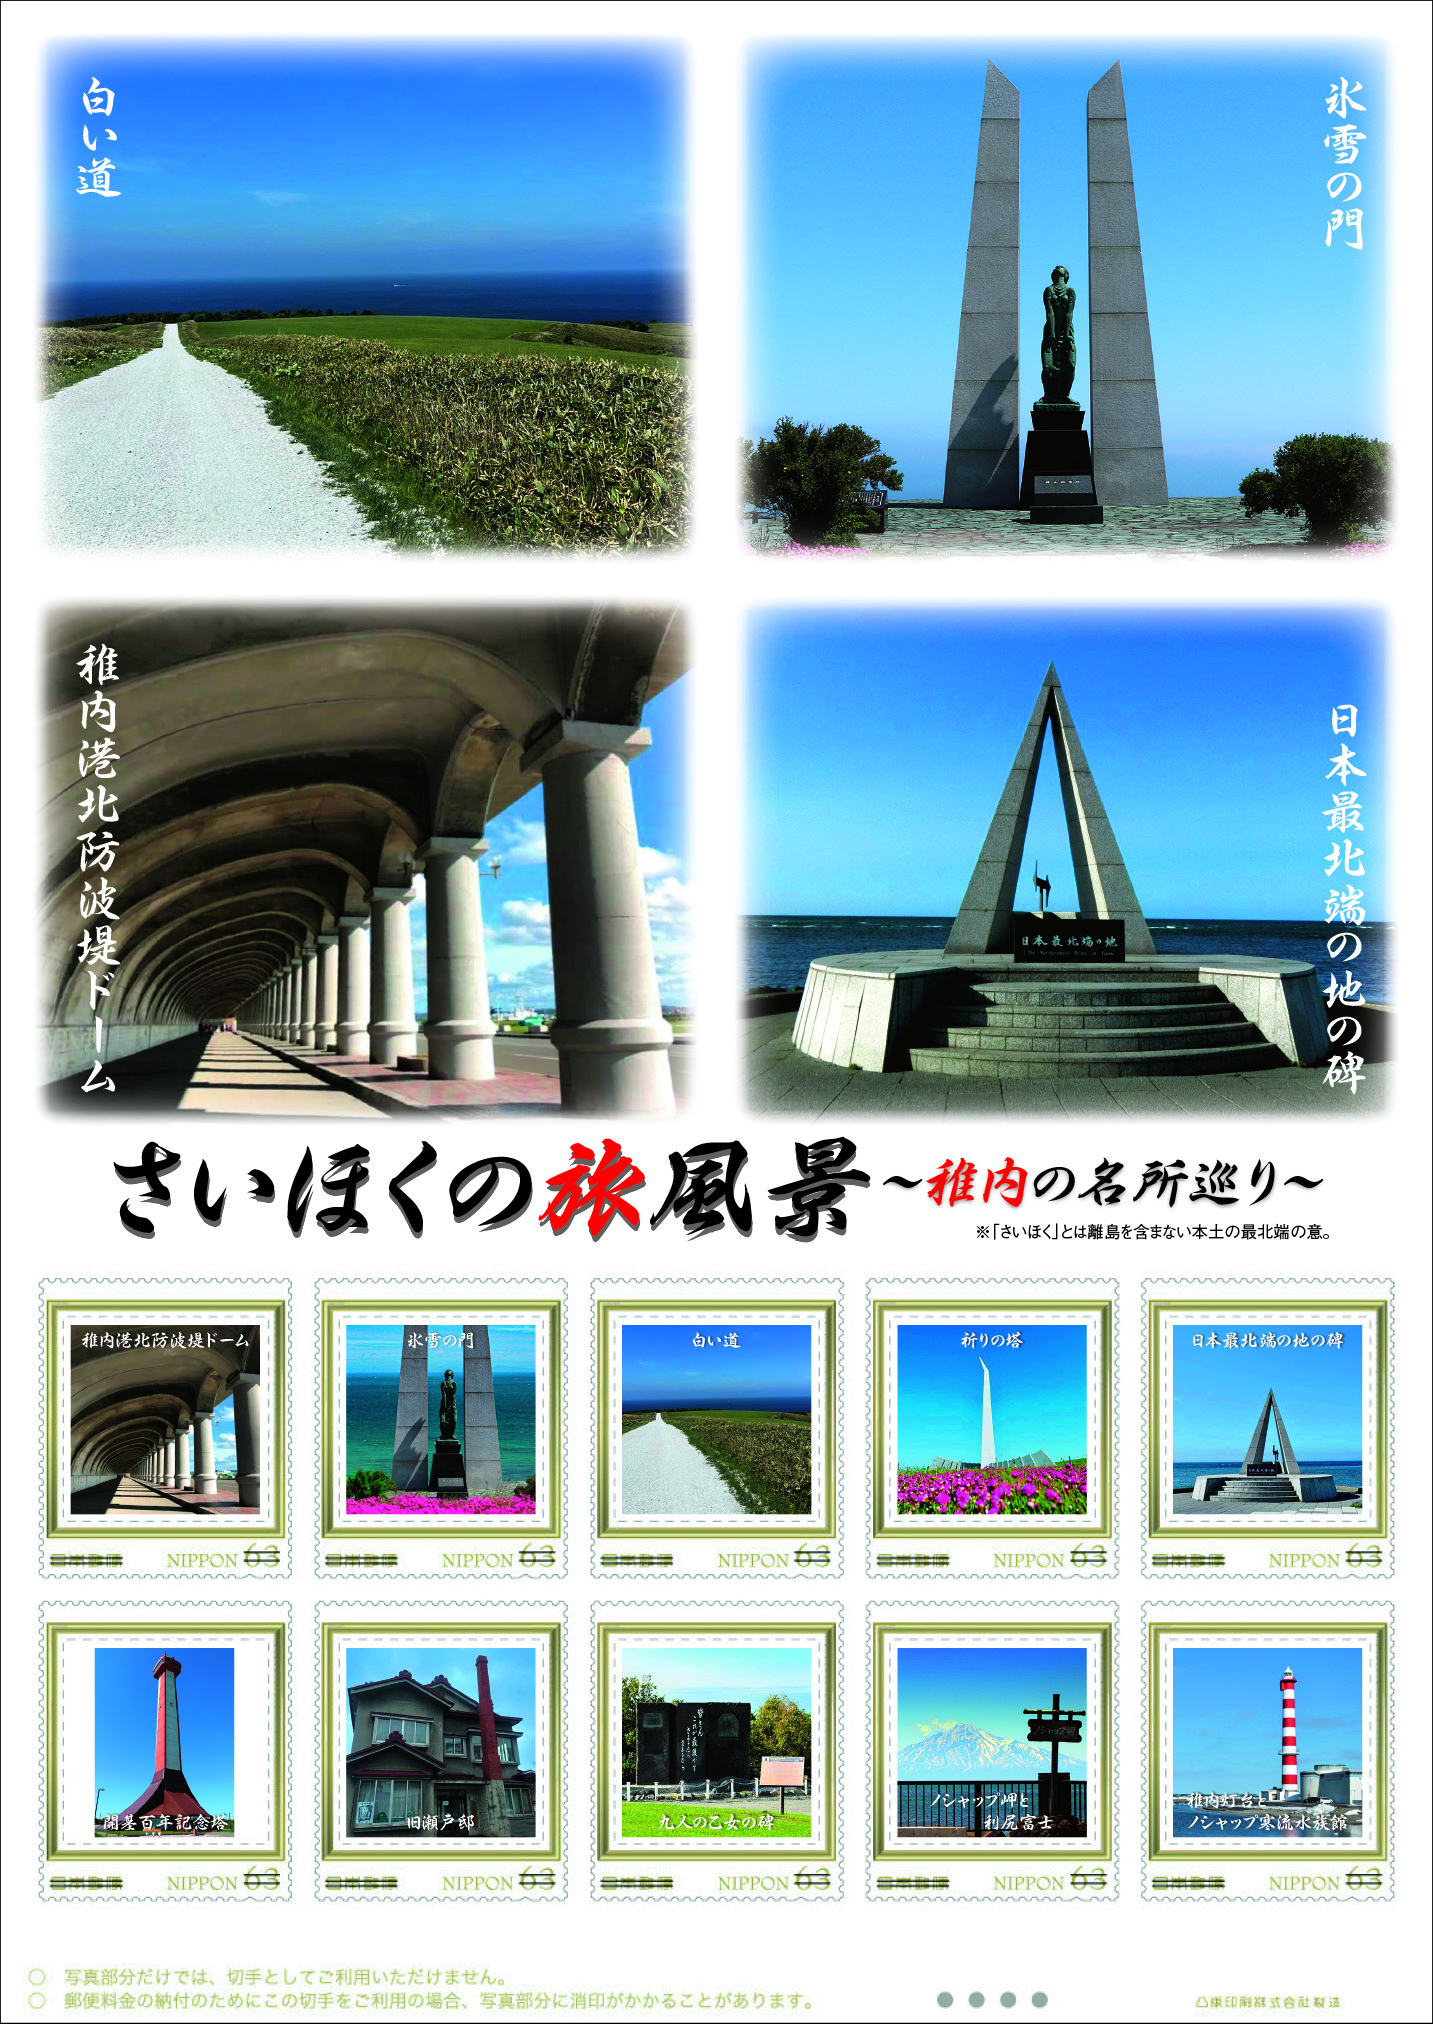 オリジナル フレーム切手「さいほくの旅風景～稚内の名所巡り～」の販売開始